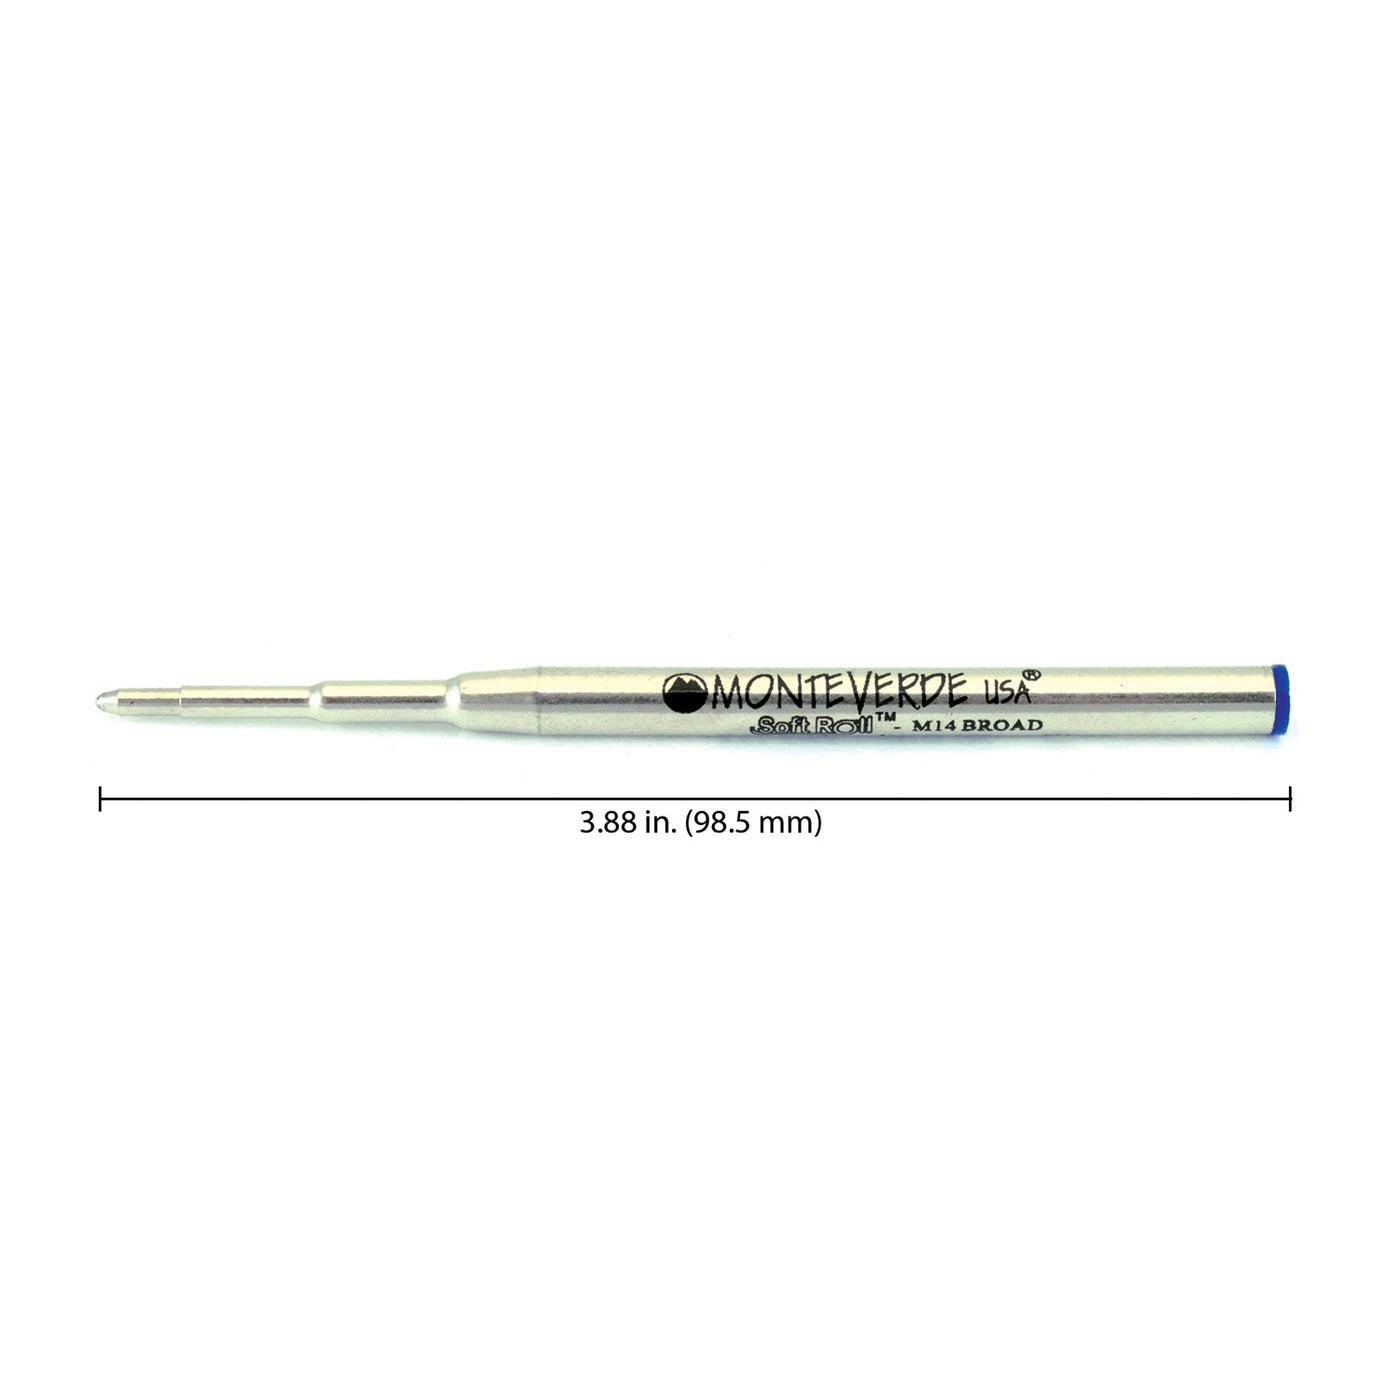 Monteverde Ball Pen Refill for Montblanc - Broad - Blue - Pack of 2 3